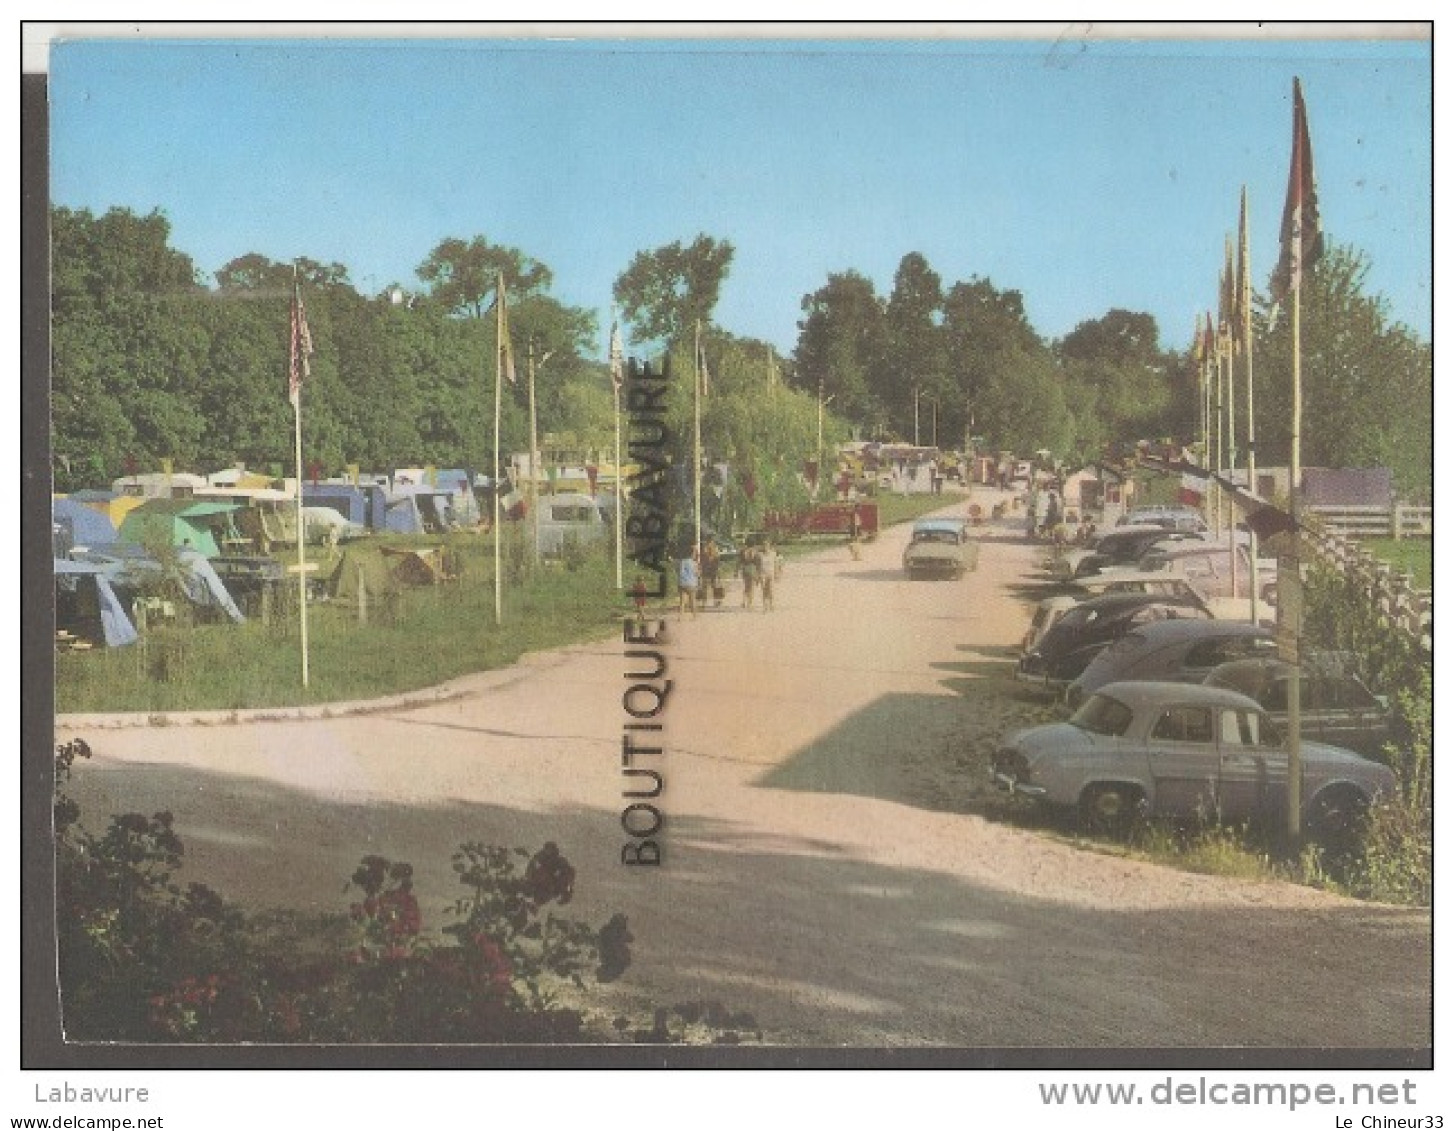 55----DUN SUR MEUSE--Lac Vert-Plage--Entrée Du Camping Et De La Plage--Tentes-caravanes--automobiles---cpm Gf - Dun Sur Meuse